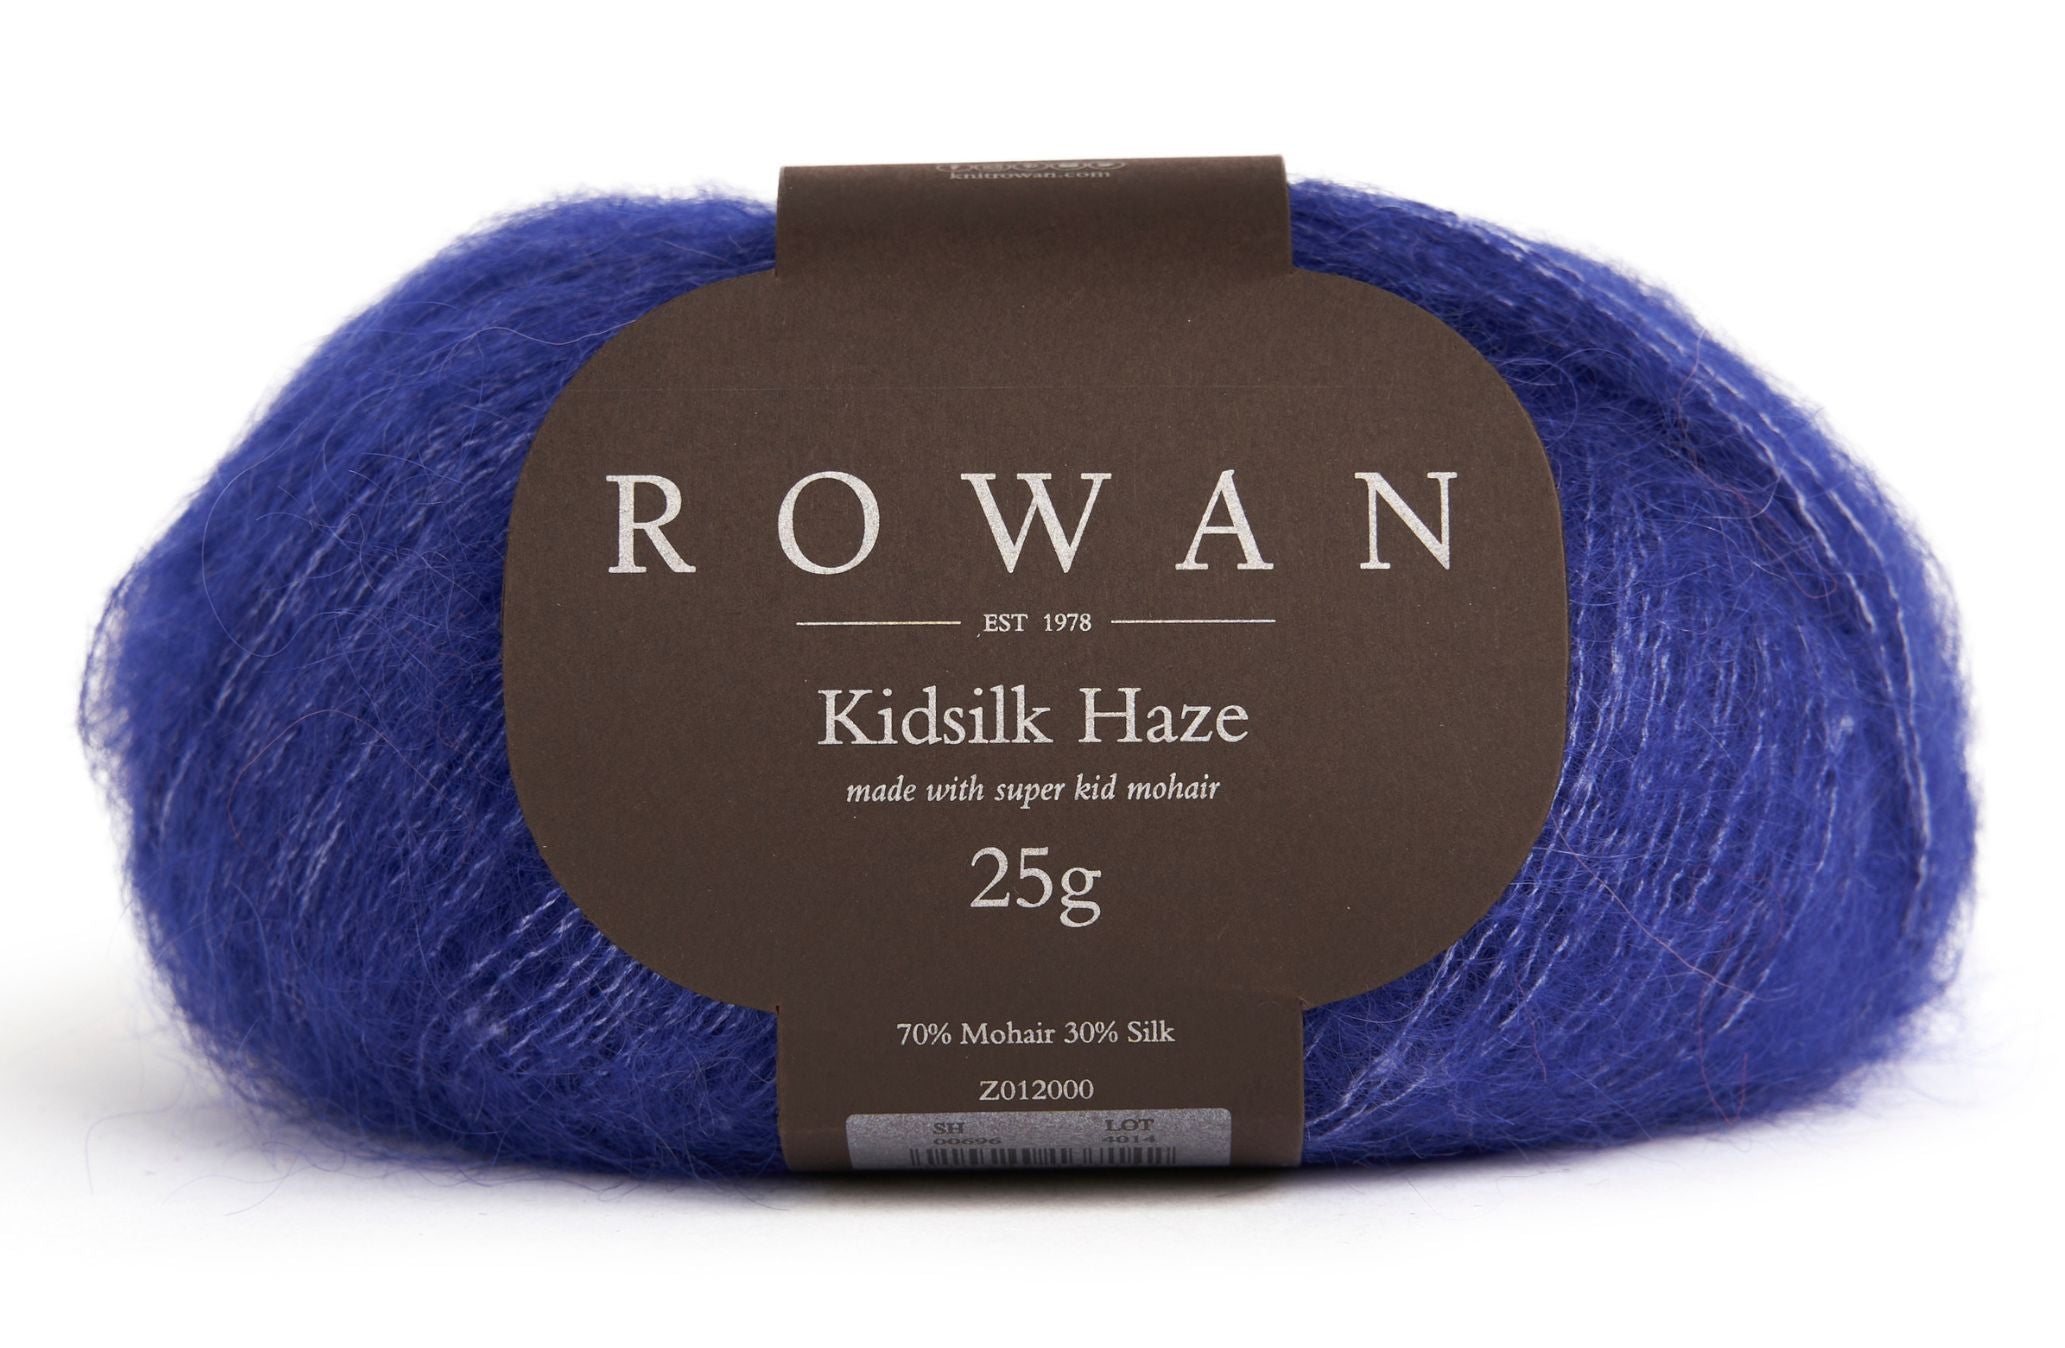 Rowan Kidsilk Haze Royal Blue 700